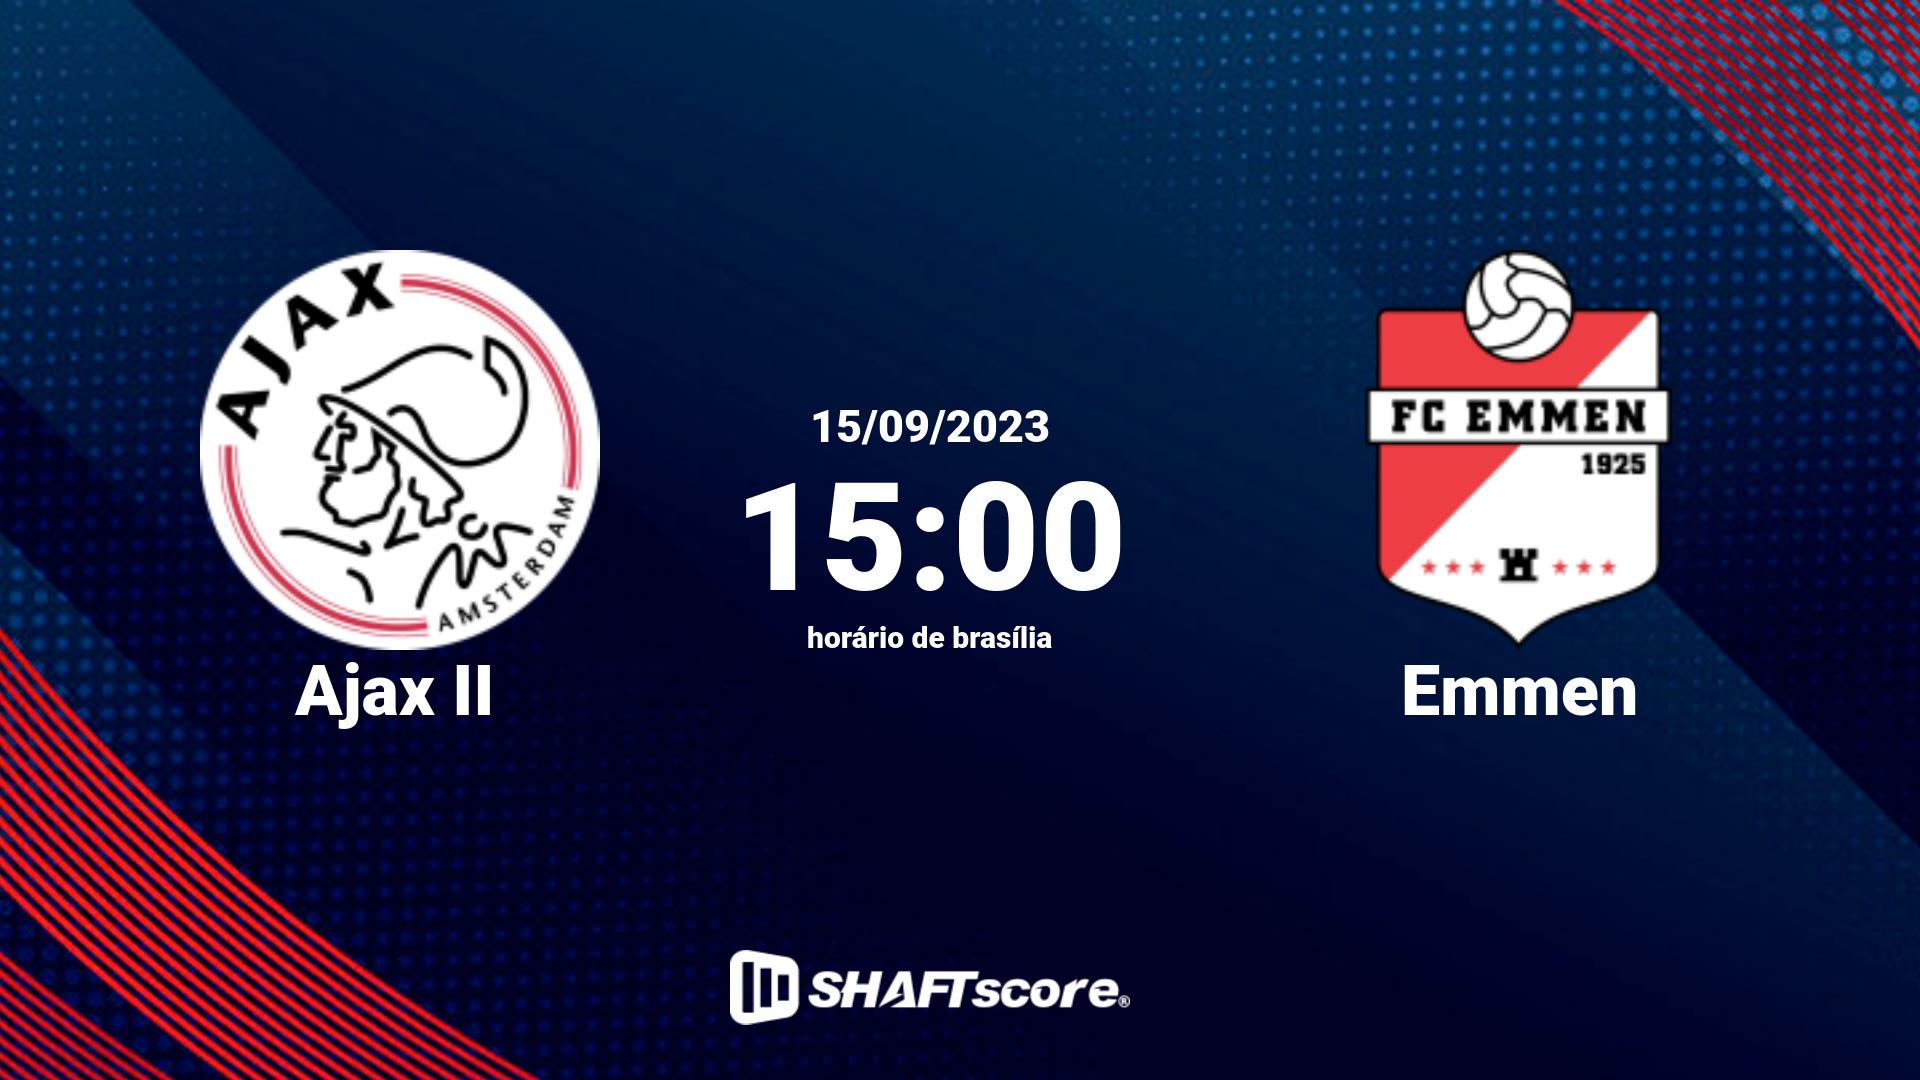 Estatísticas do jogo Ajax II vs Emmen 15.09 15:00